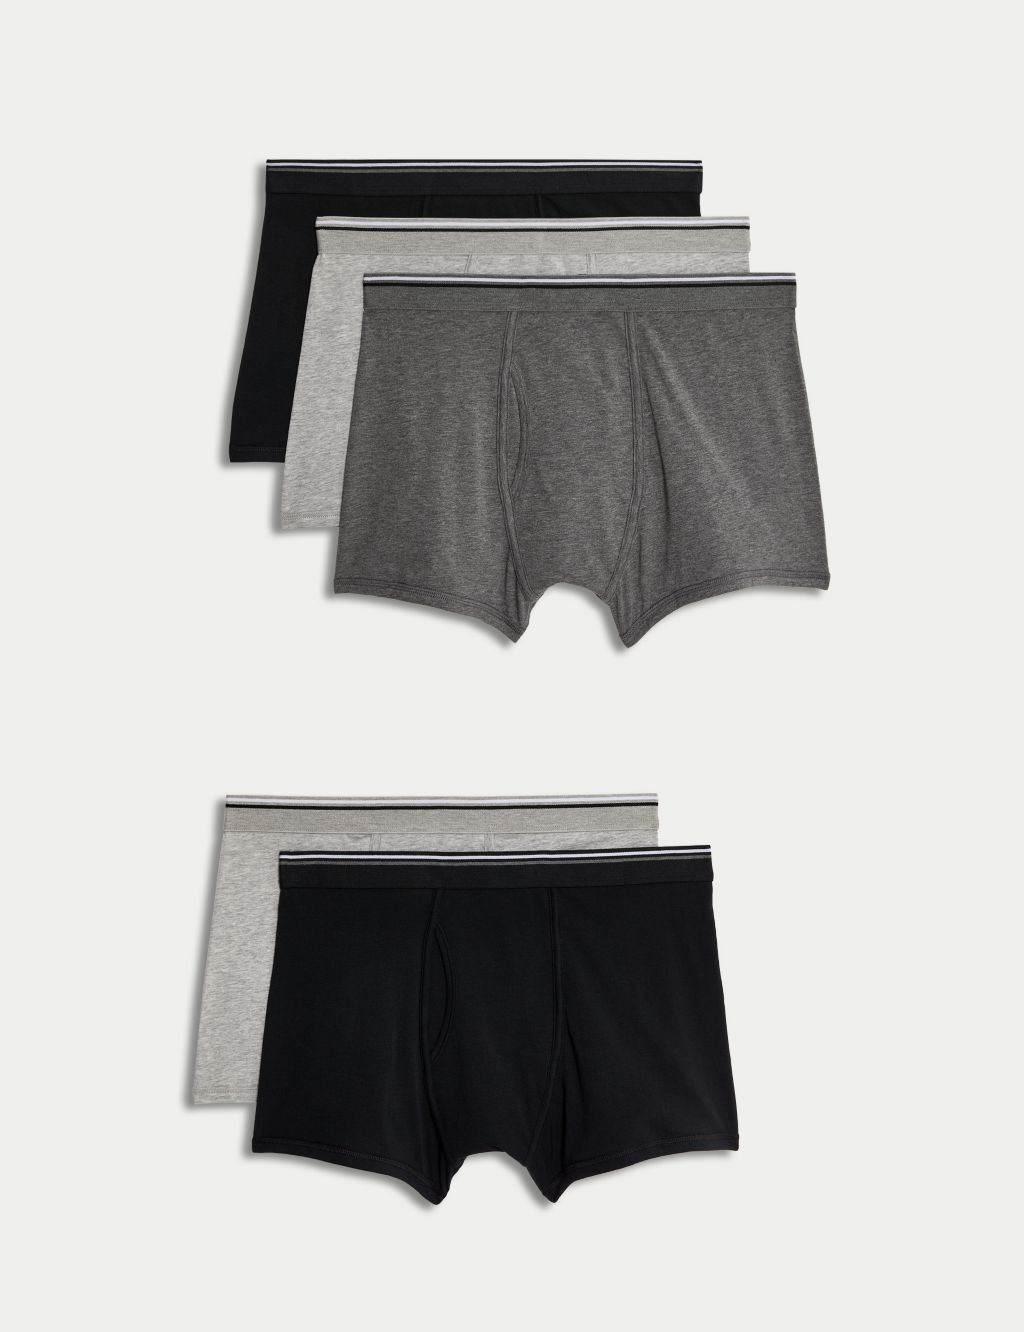 Reebok Athletic Underwear in Dark Grey, Black, White